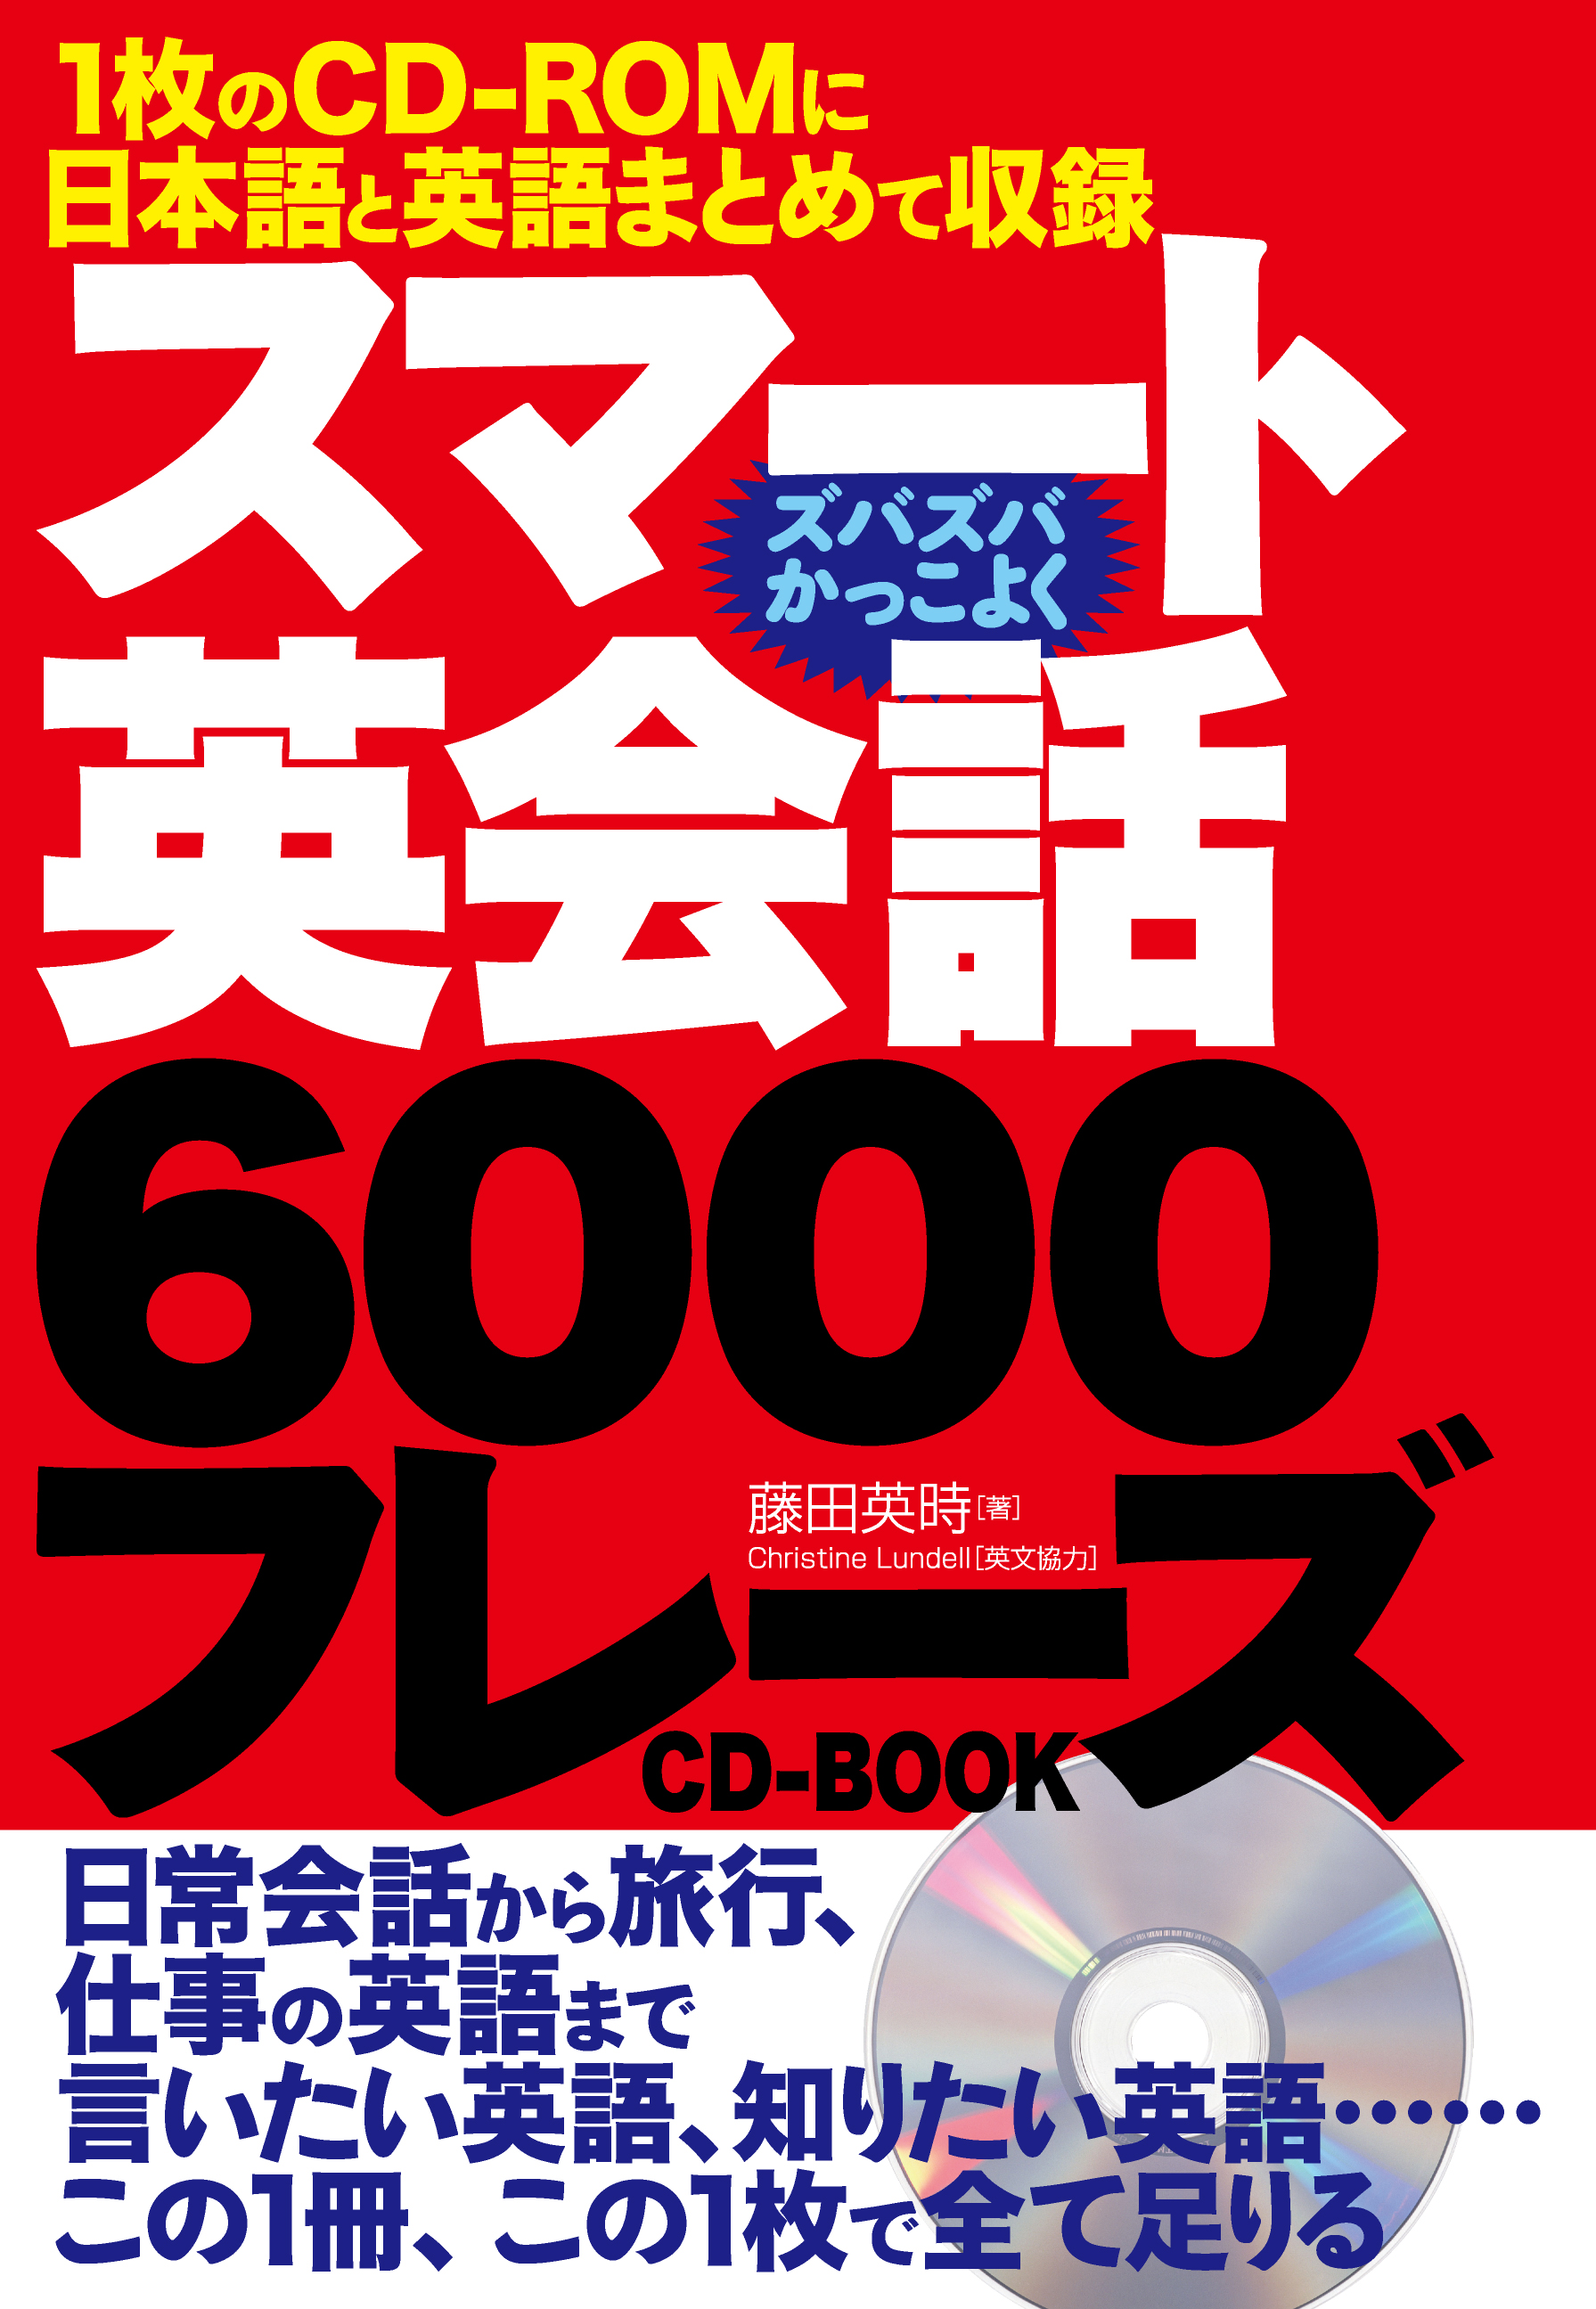 １枚のcd Romに日本語と英語まとめて収録 スマート英会話６０００フレーズcd Book 12月5日発売 株式会社主婦の友インフォスのプレスリリース